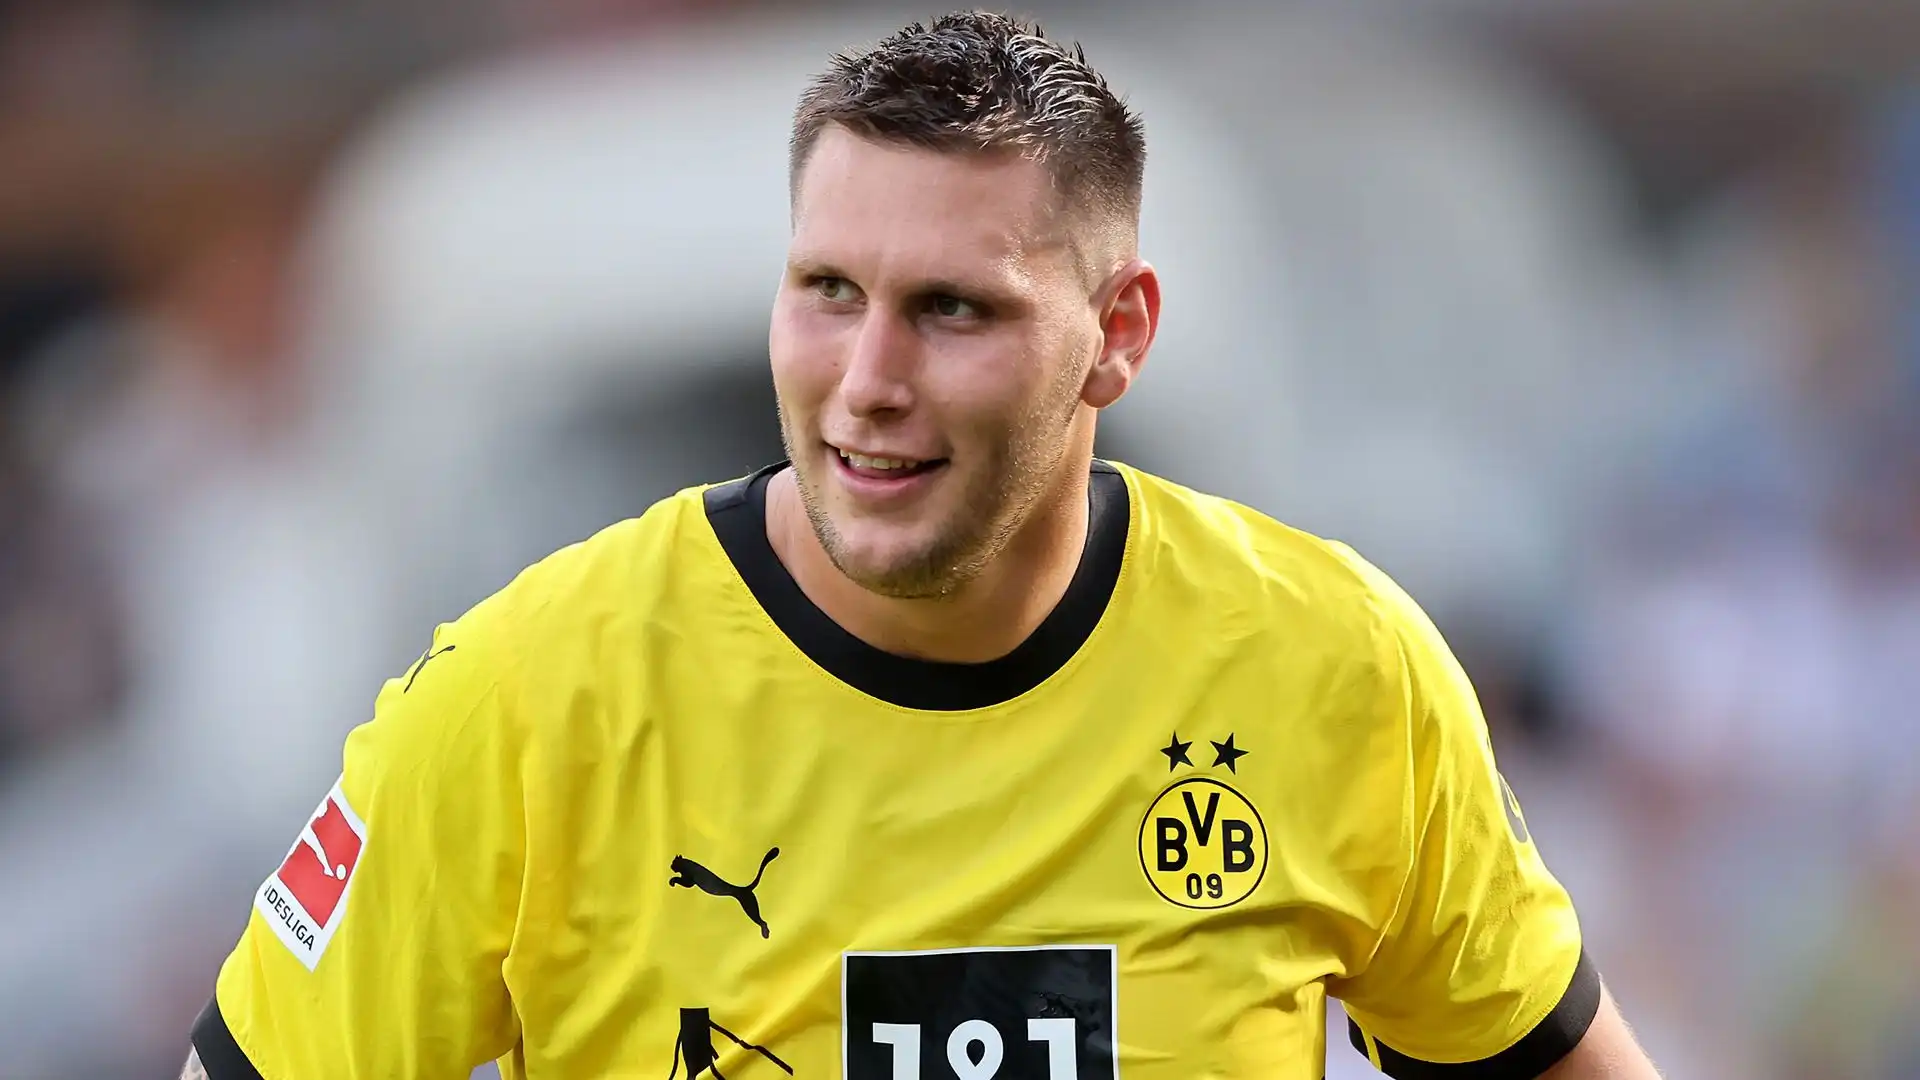 Per la giusta offerta, il Borussia Dortmund non si opporrebbe alla sua cessione